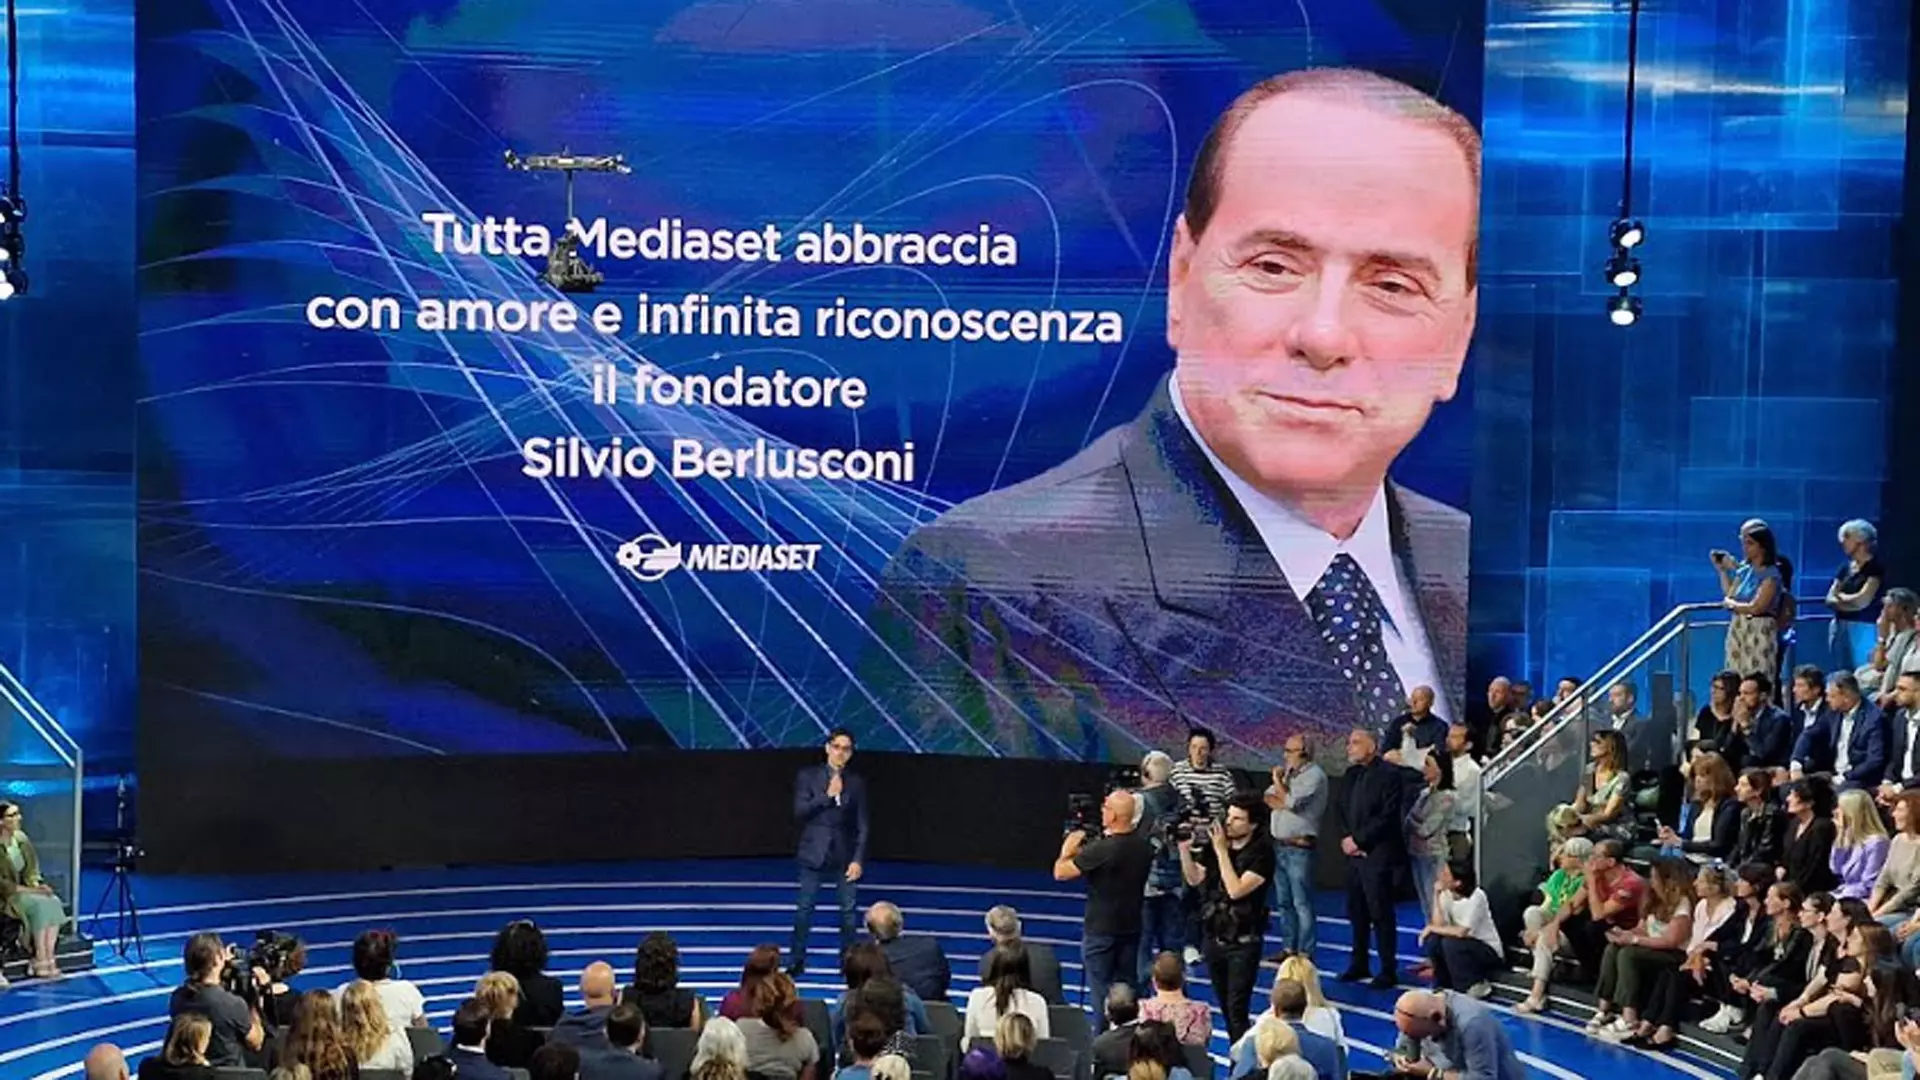 Tutta Mediaset abbraccia Pier Silvio Berlusconi